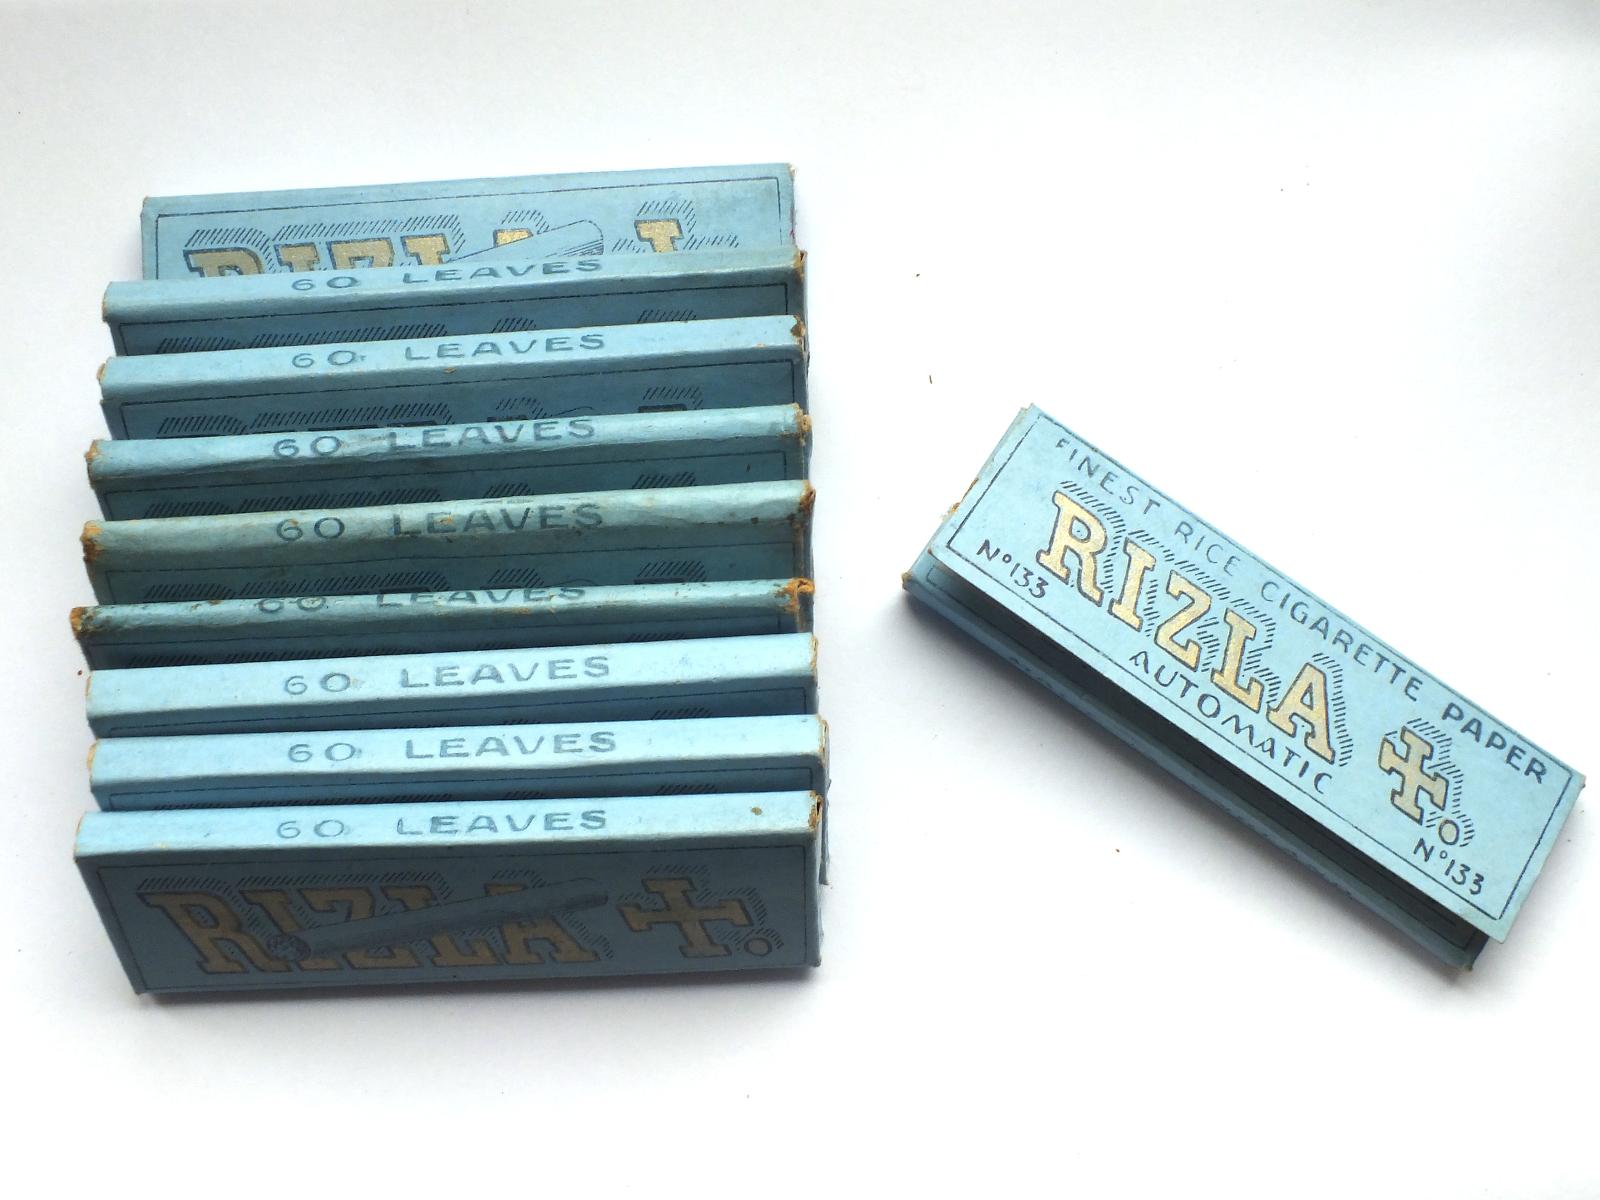 Staré cigaretové papírky - Rizla cigarety (modré) cena za 1 balení - Zberateľstvo